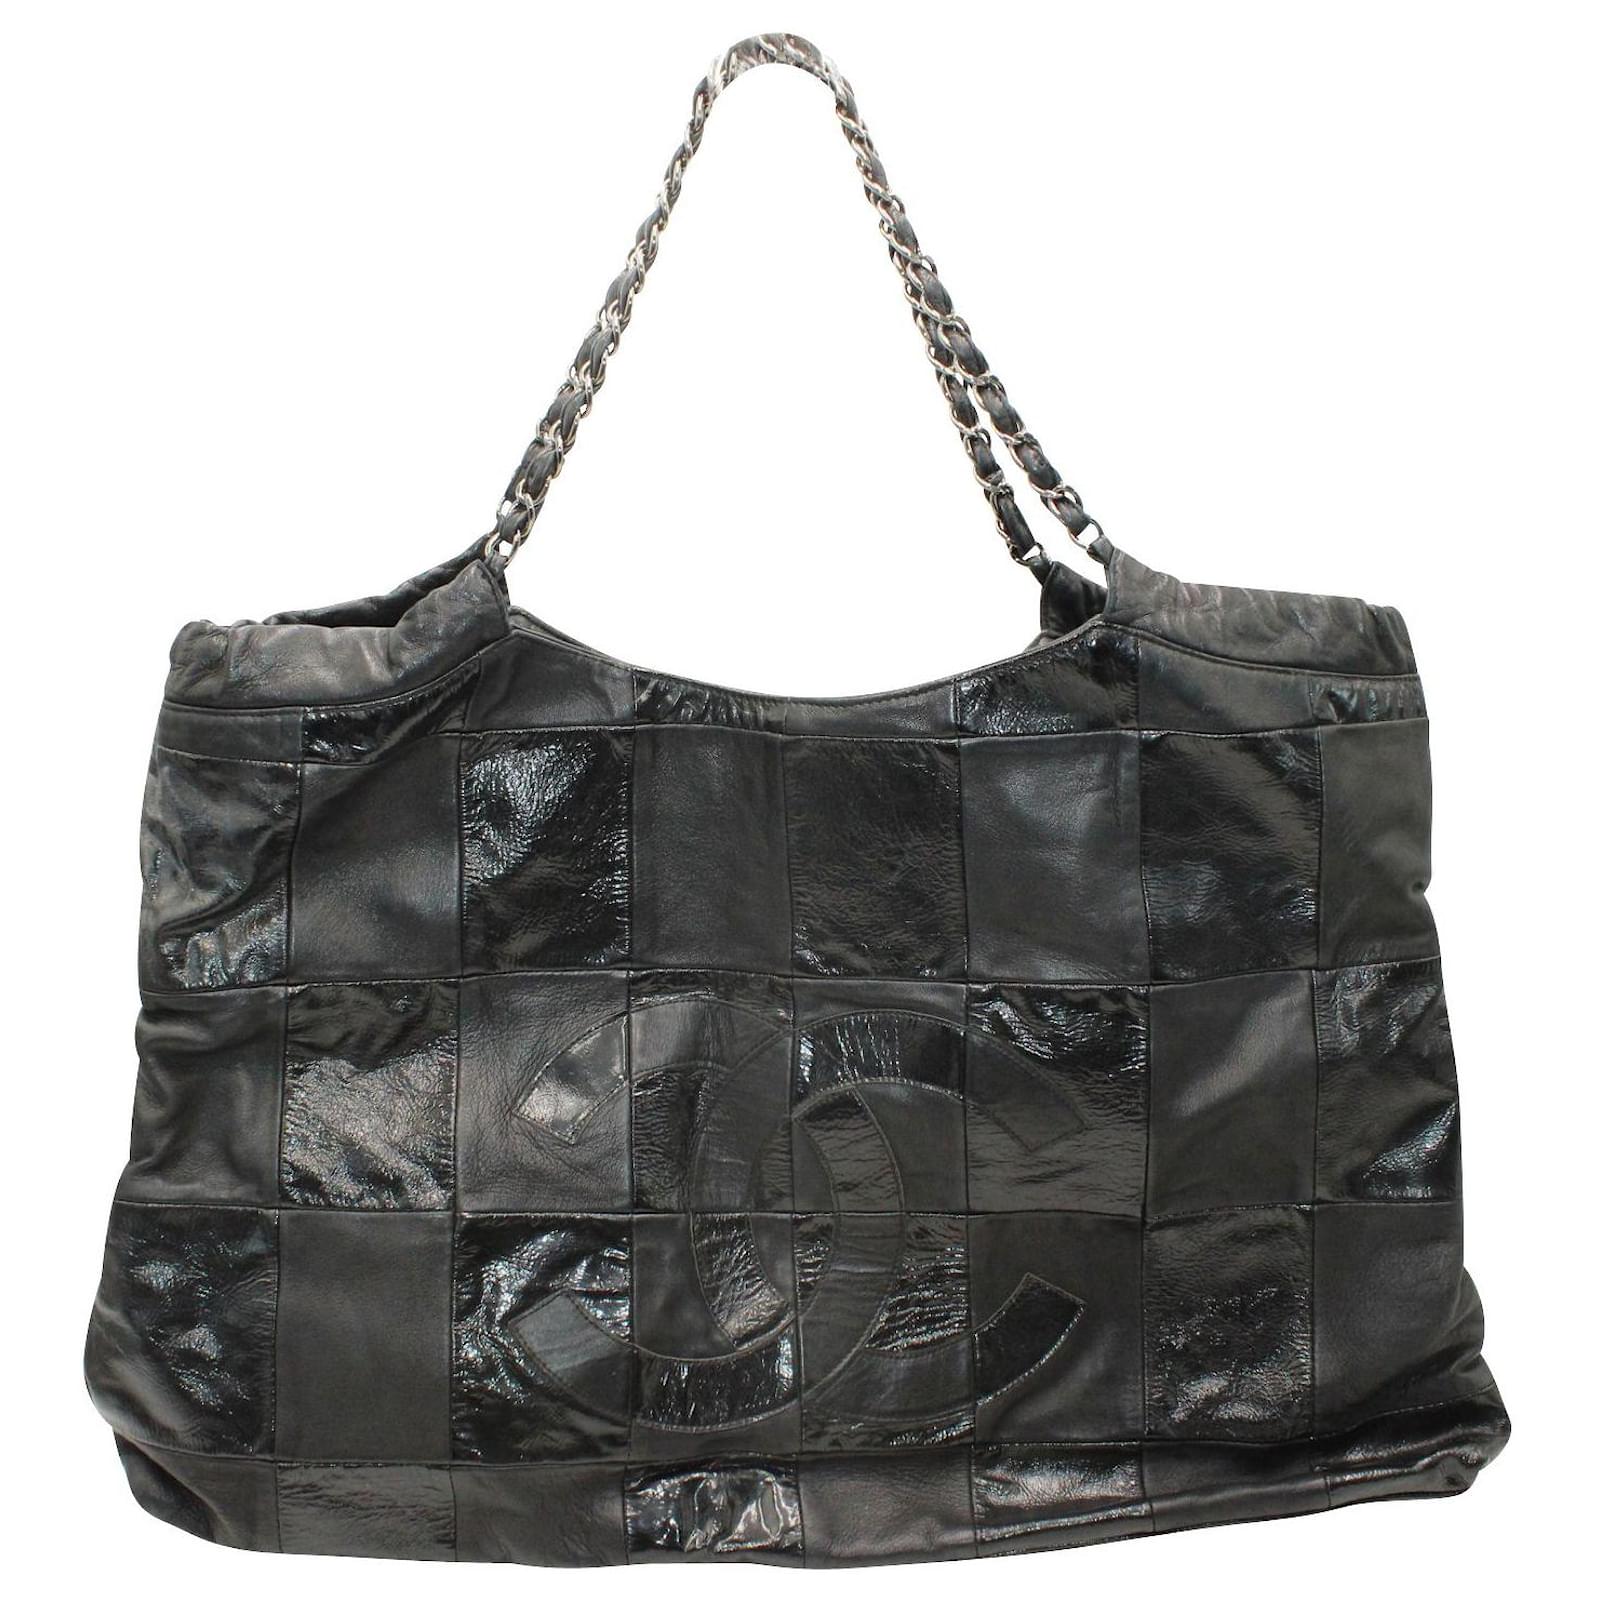 Chanel Limited Edition Resort 2011 Black Fringe Mesh Tote Bag